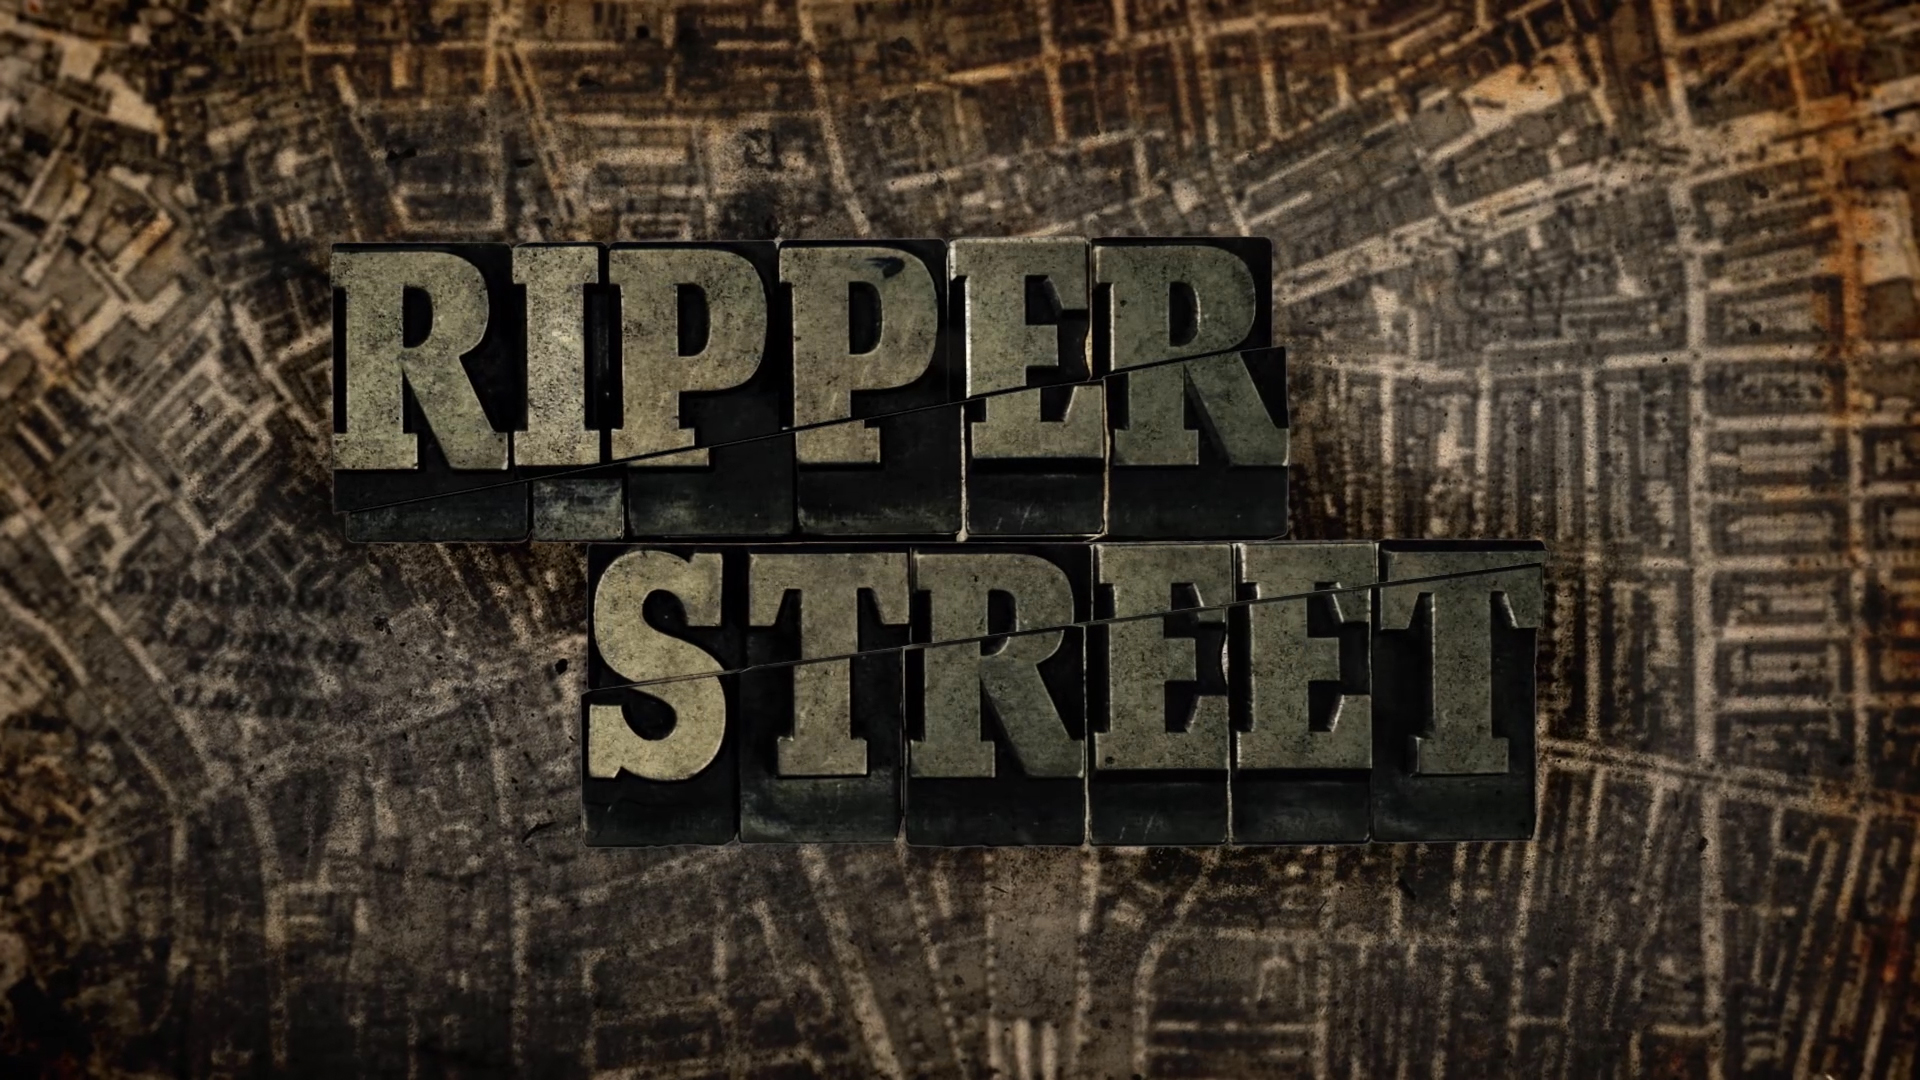 Ripper_Street_series1_Final_hd.jpg